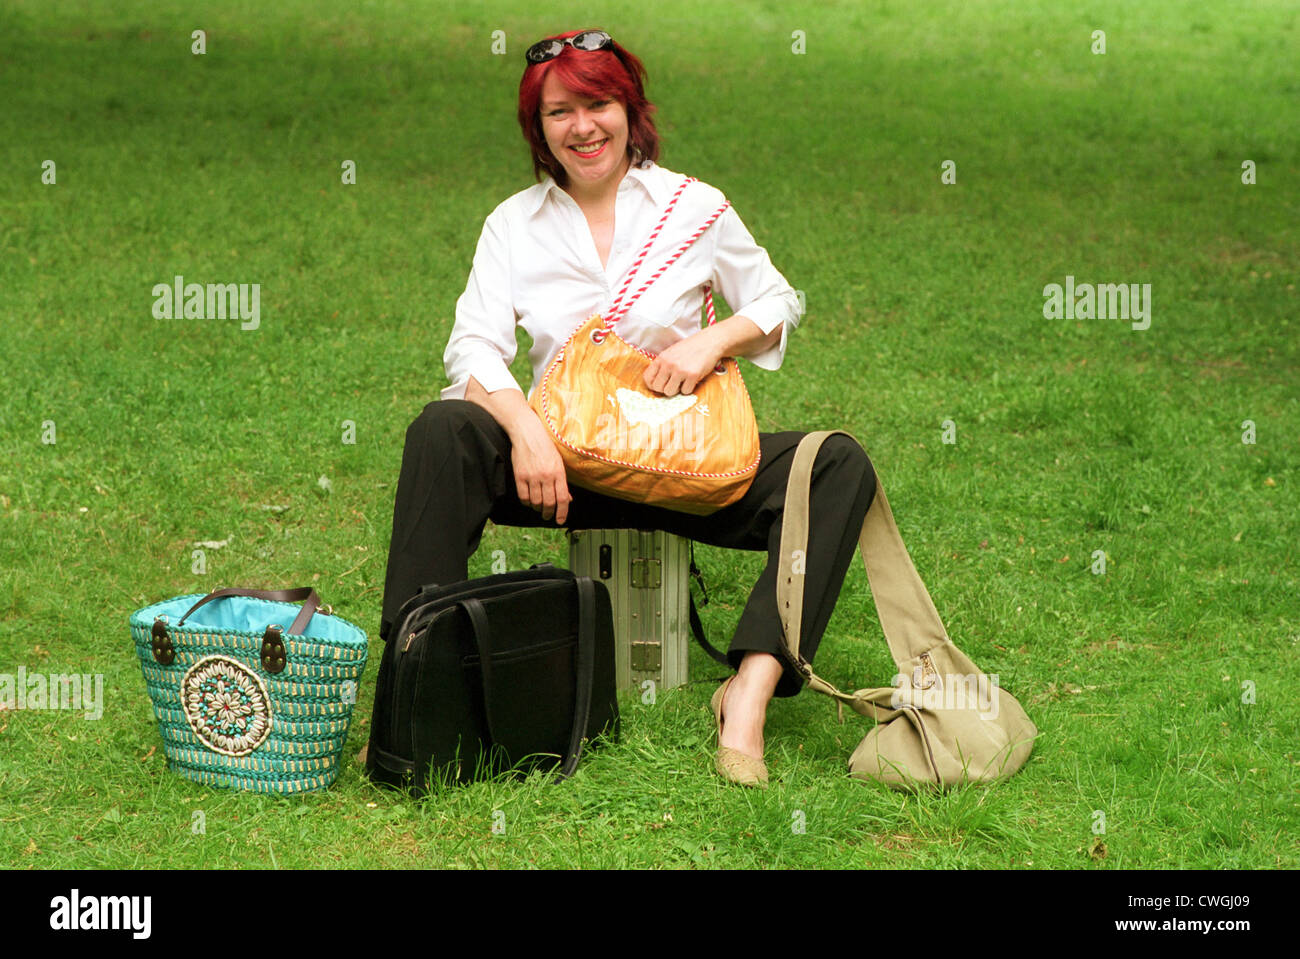 Berlin woman with many handbags Stock Photo